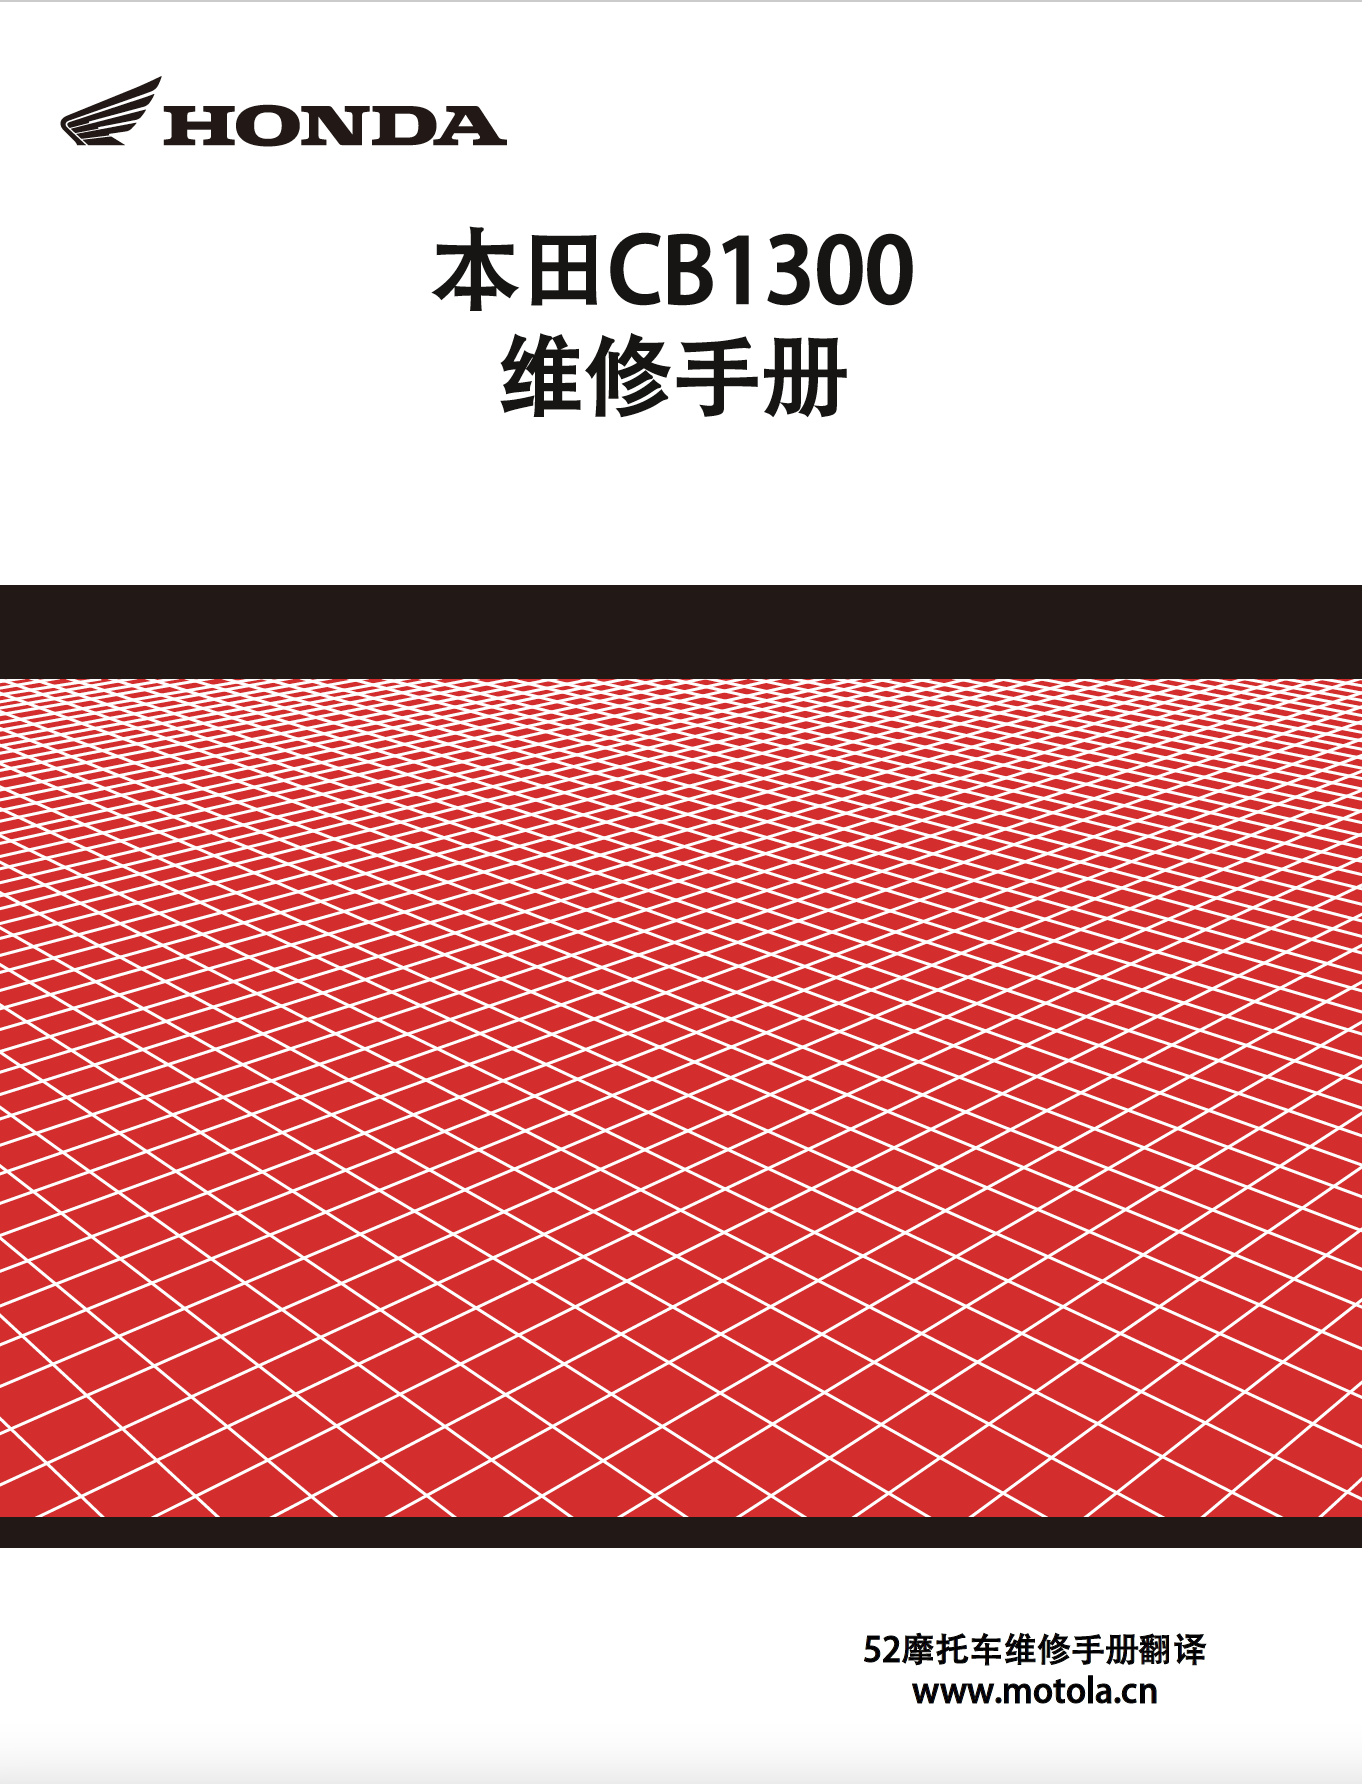 简体中文版2008-2013本田CB1300维修手册